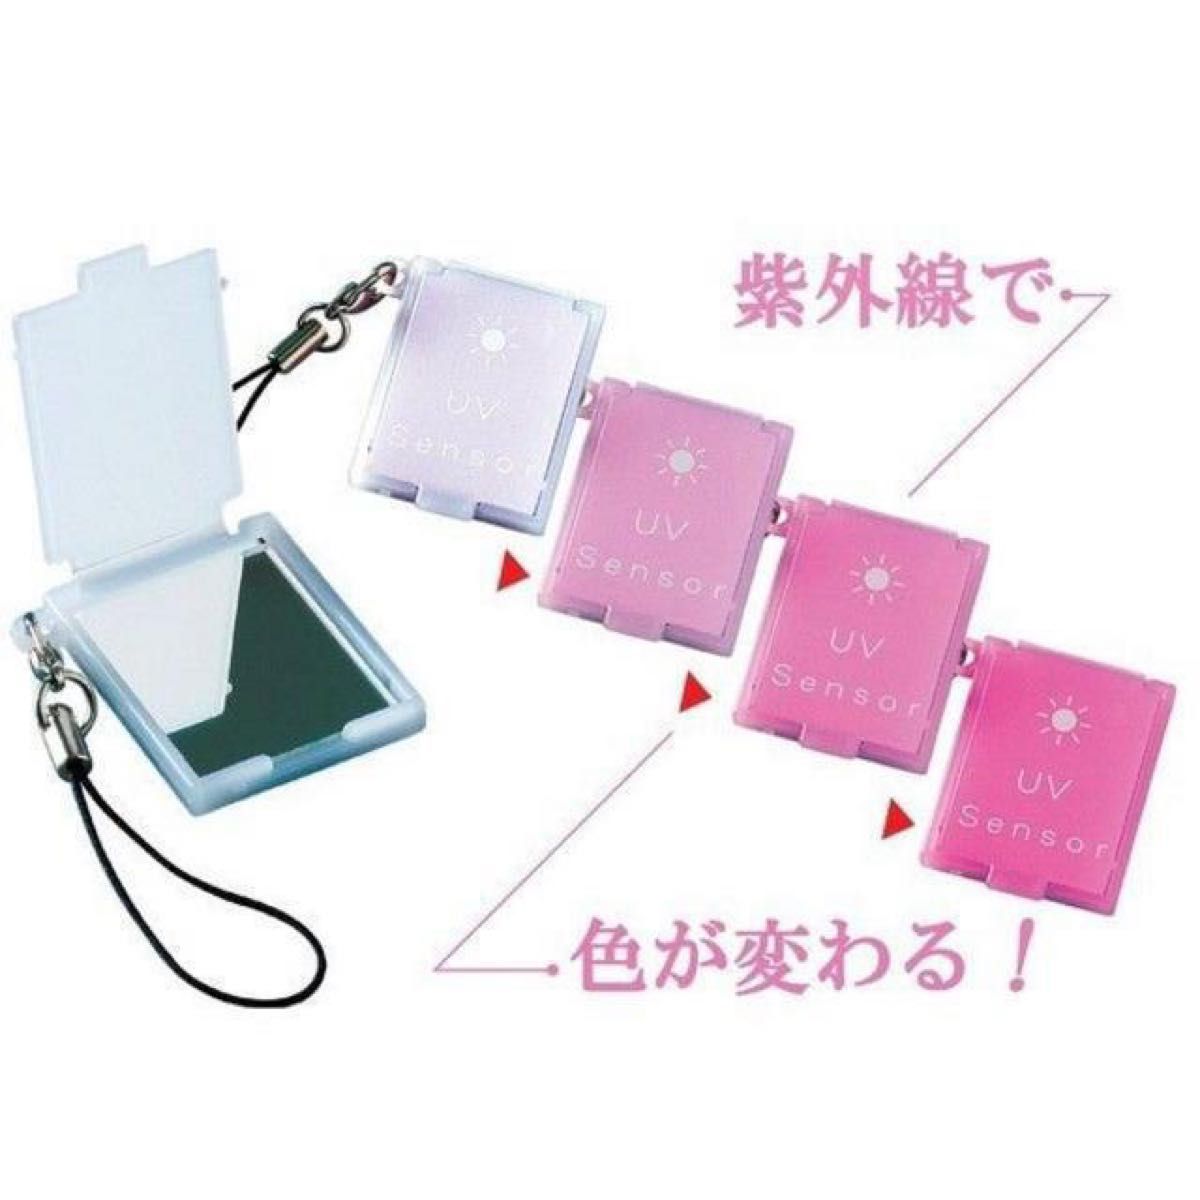 携帯ミニコンパクトミラー 日本製 紫外線対策